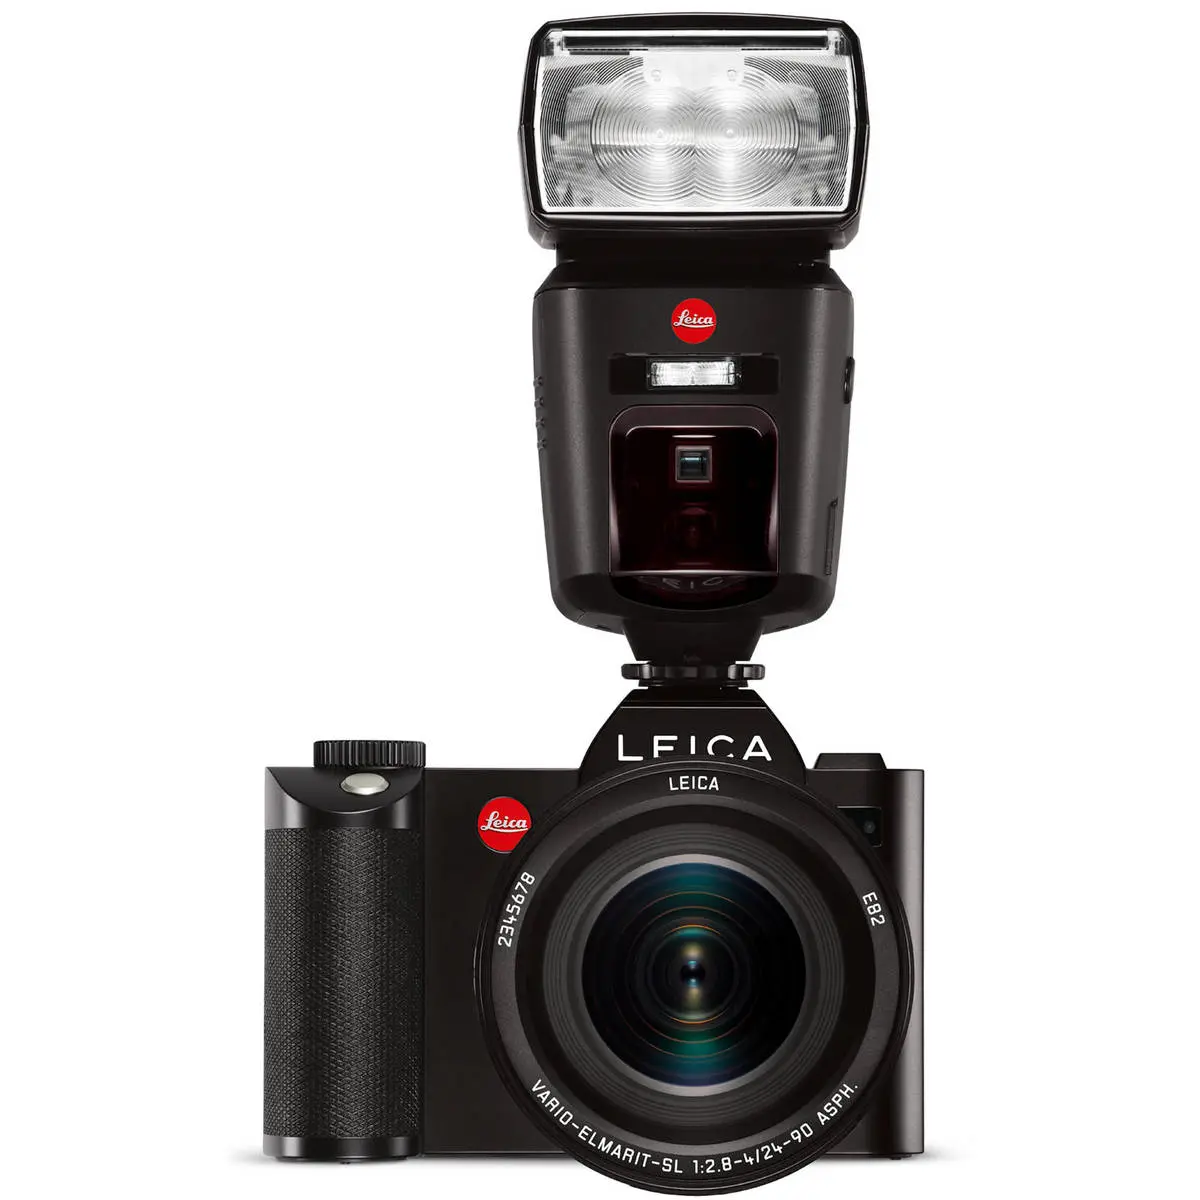 3. Leica SF 64 Flash